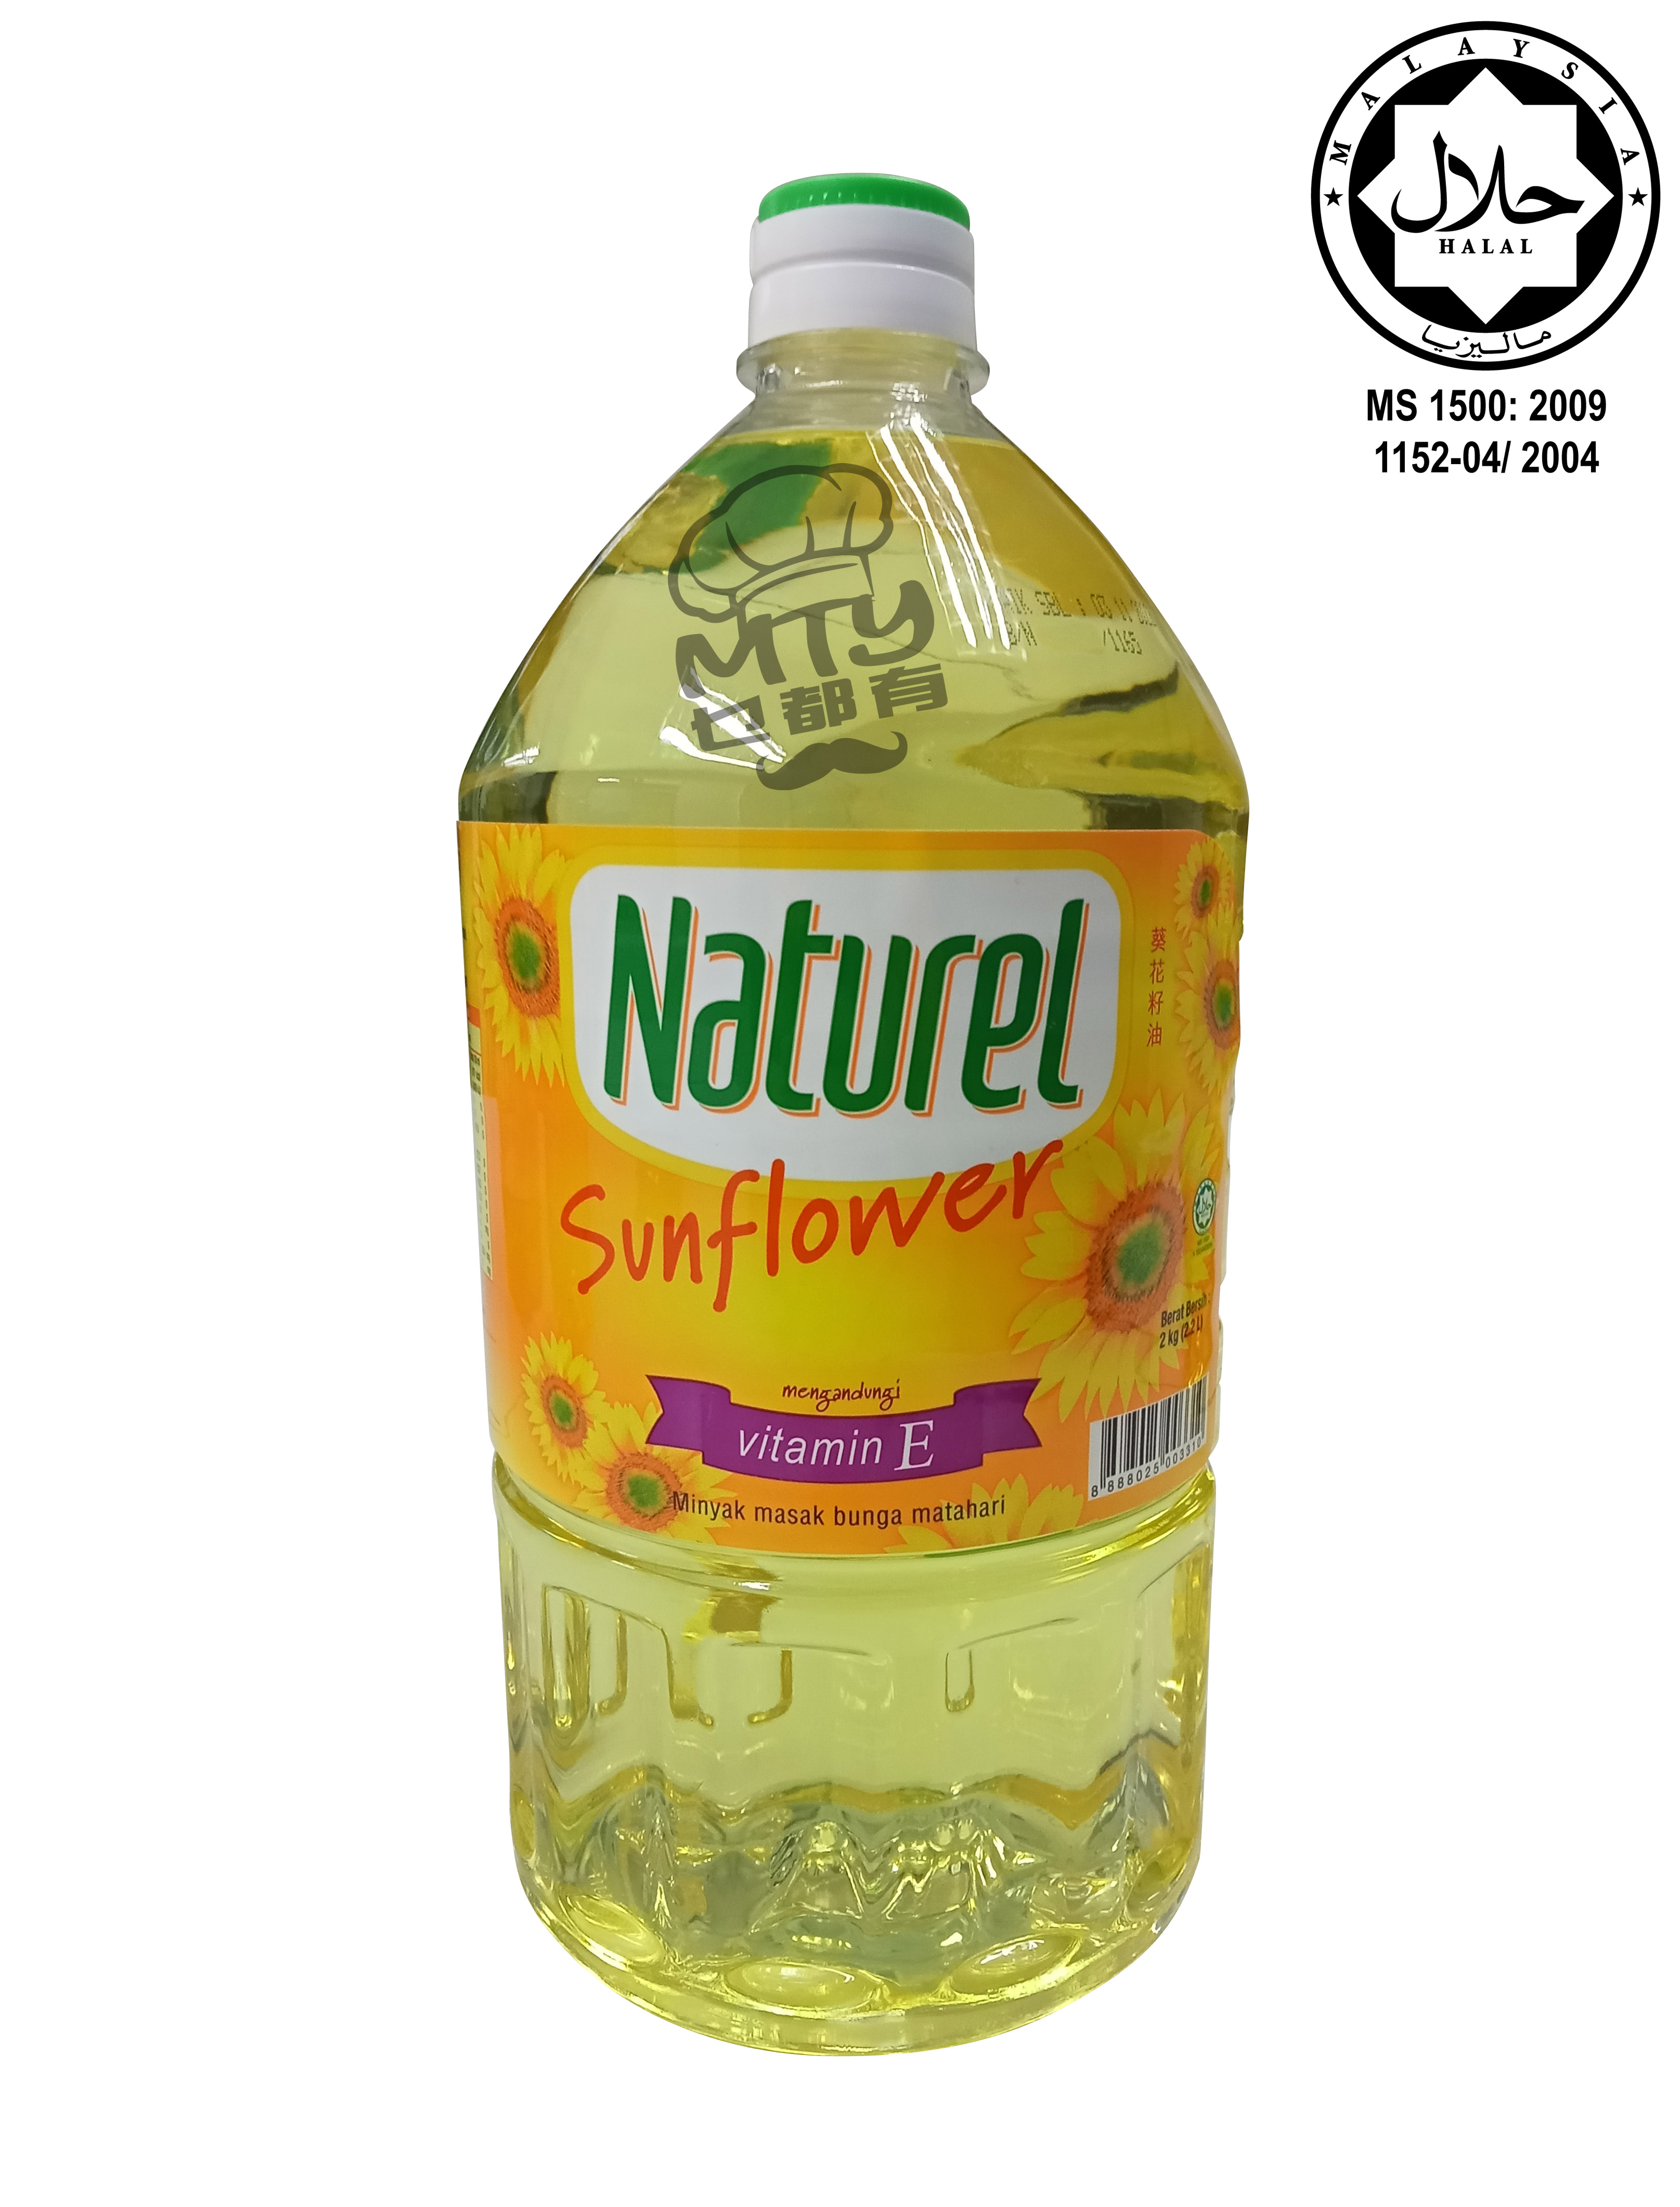 Naturel Sunflower Oil 2kg